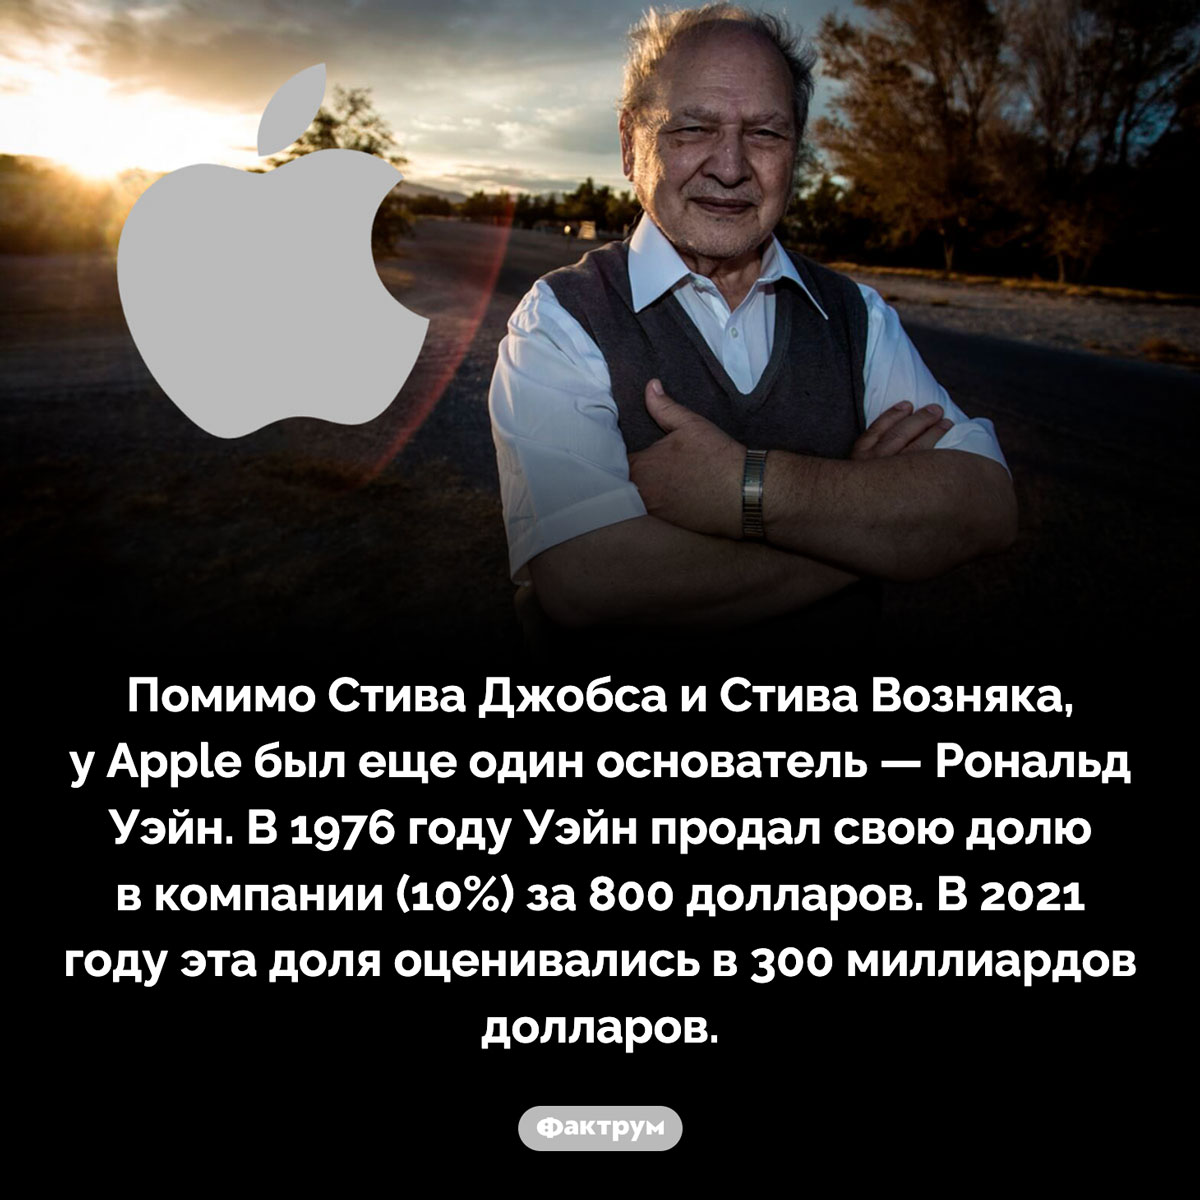 Основатели Apple. Помимо Стива Джобса и Стива Возняка, у Apple был еще один основатель — Рональд Уэйн. В 1976 году Уэйн продал свою долю в компании (10%) за 800 долларов. В 2021 году эта доля оценивались в 300 миллиардов долларов.